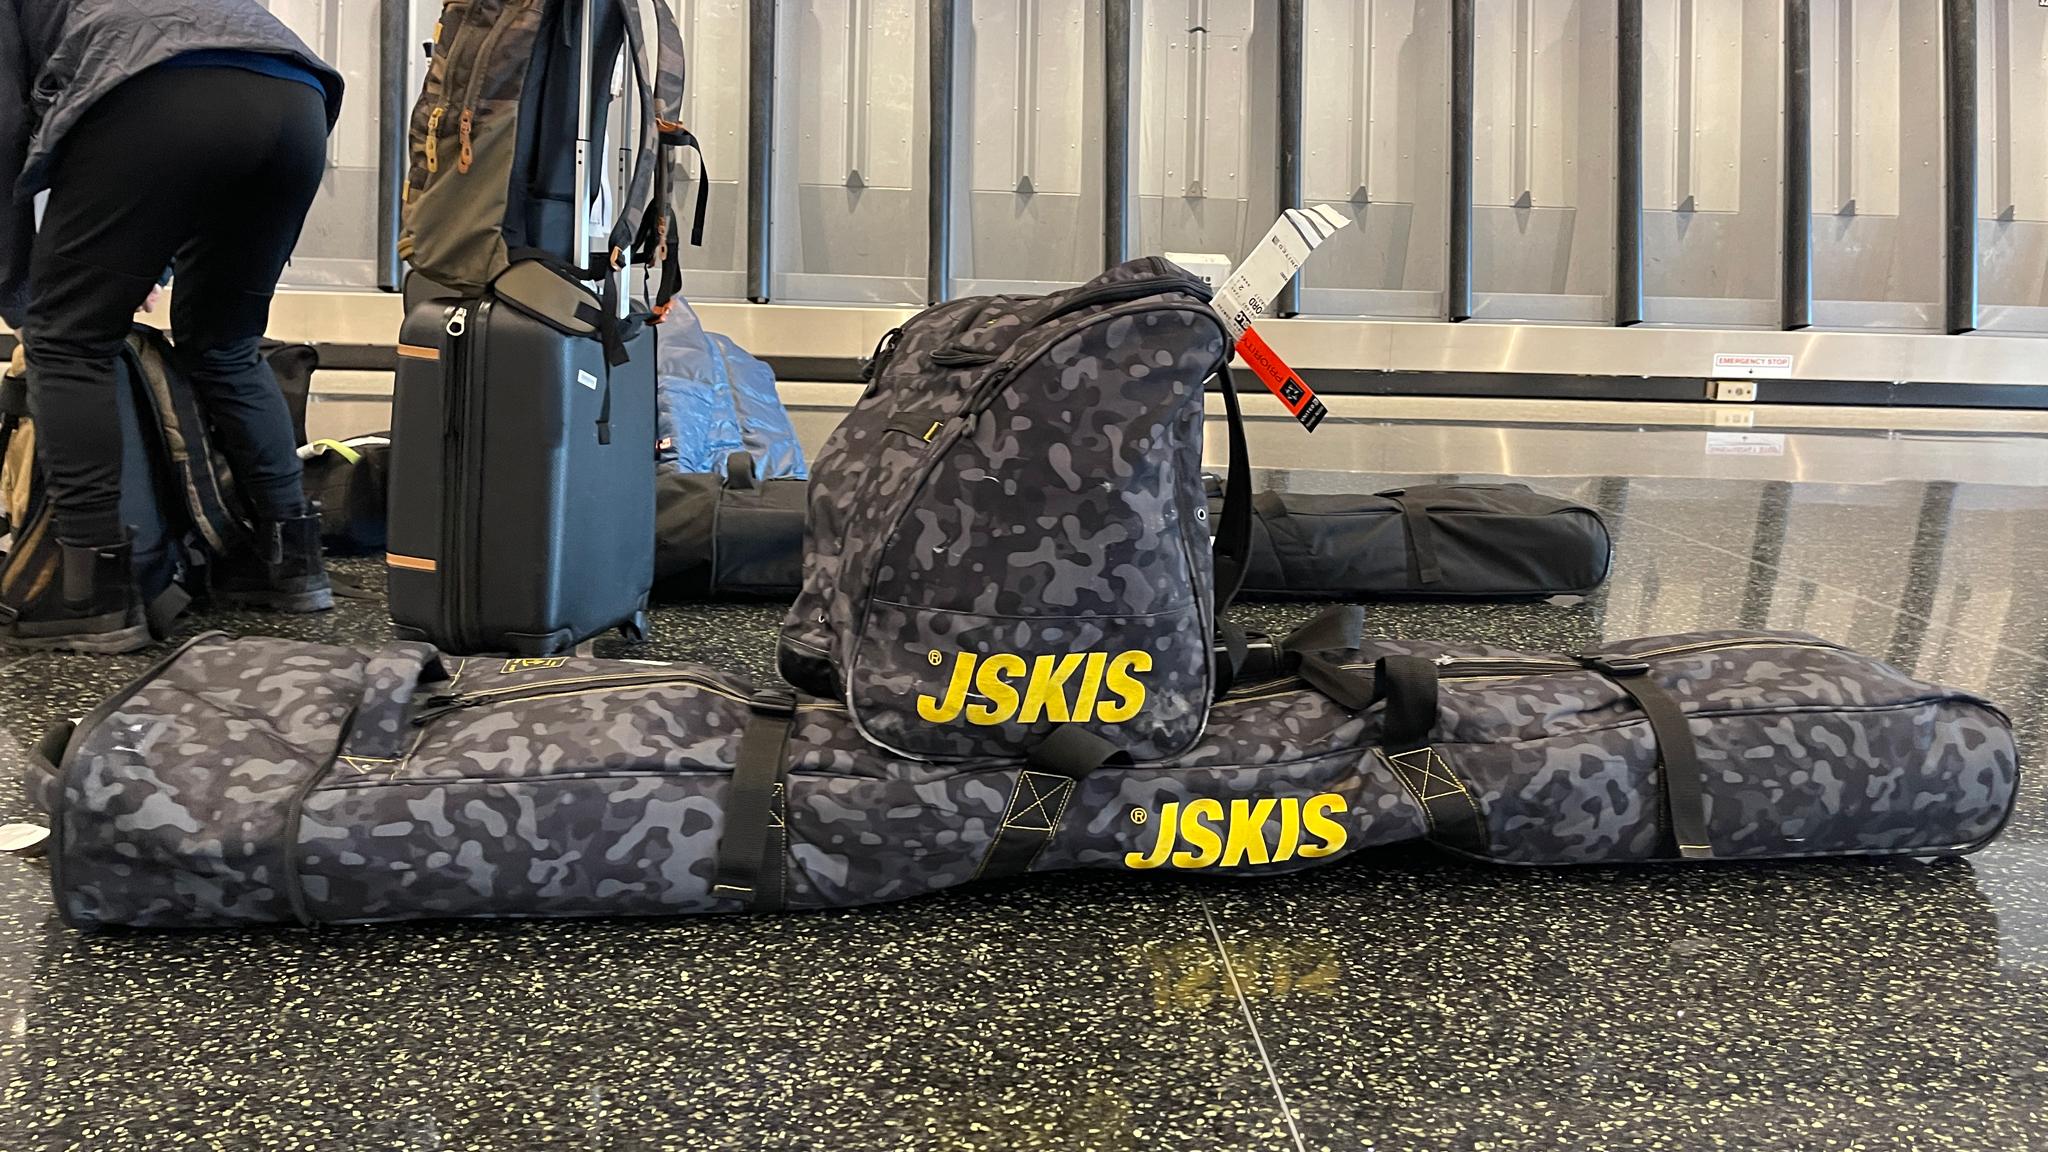 J skis camo boot and ski bag on the airport floor